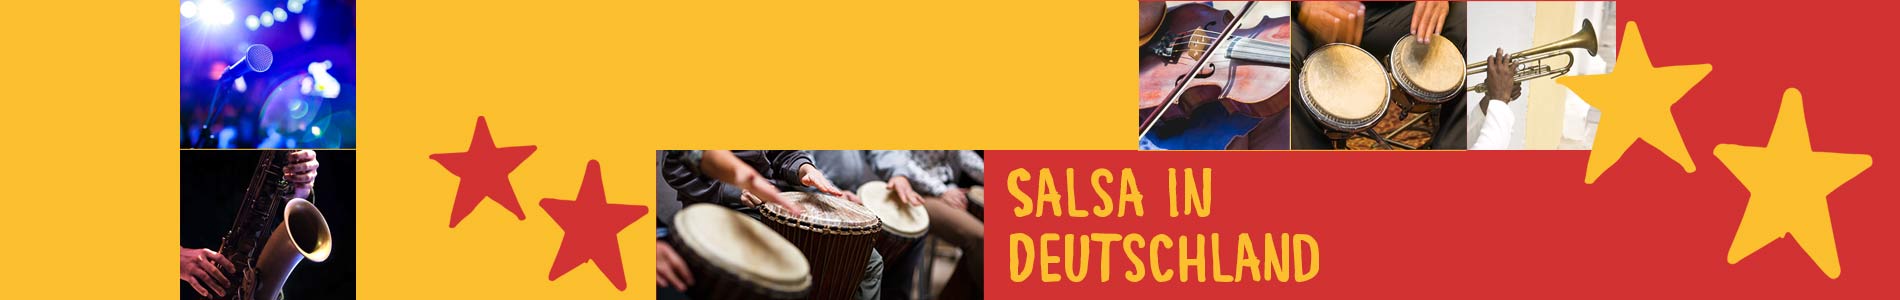 Salsa in Buttenheim – Salsa lernen und tanzen, Tanzkurse, Partys, Veranstaltungen